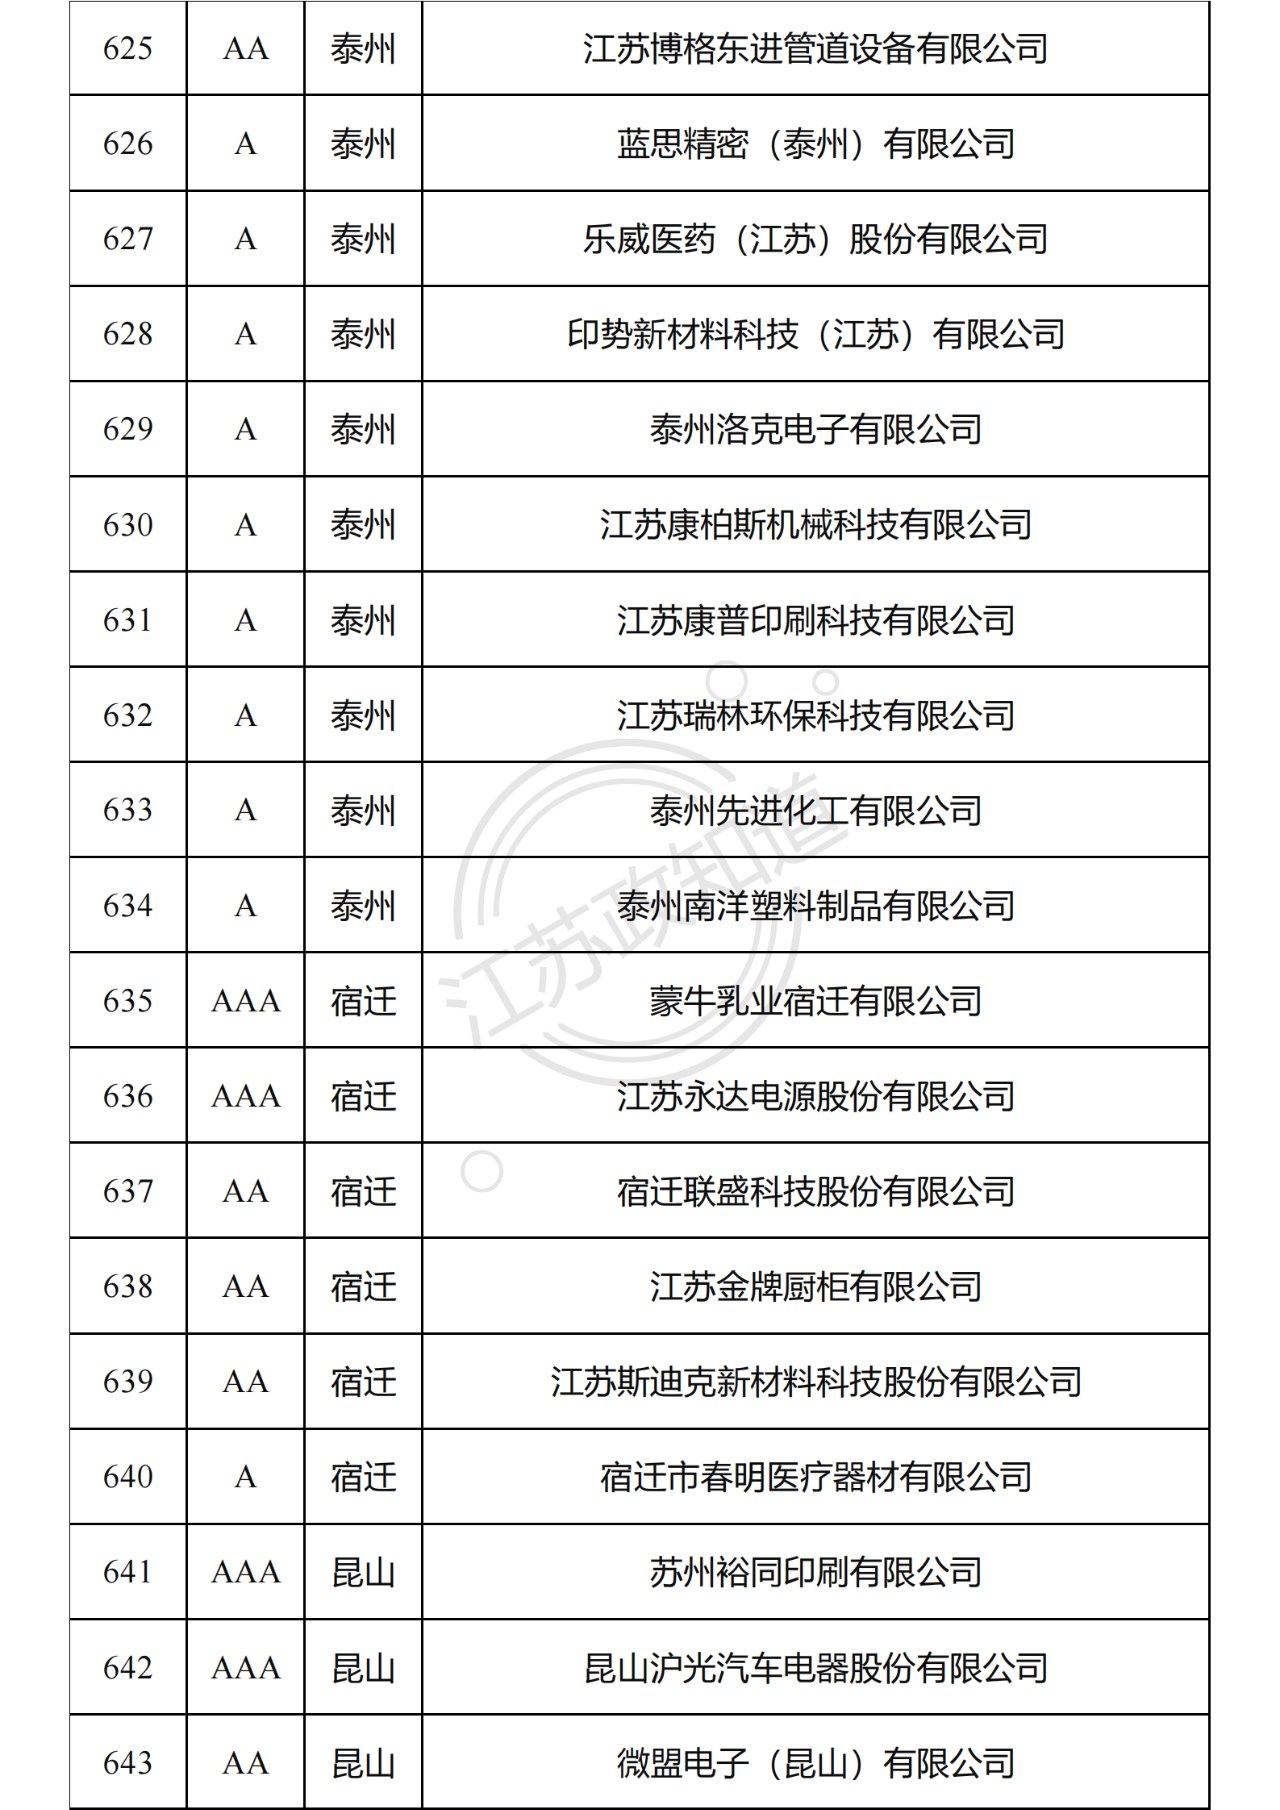 2022年度江苏省两化融合管理体系贯标试点企业培育对象拟认定名单35.png